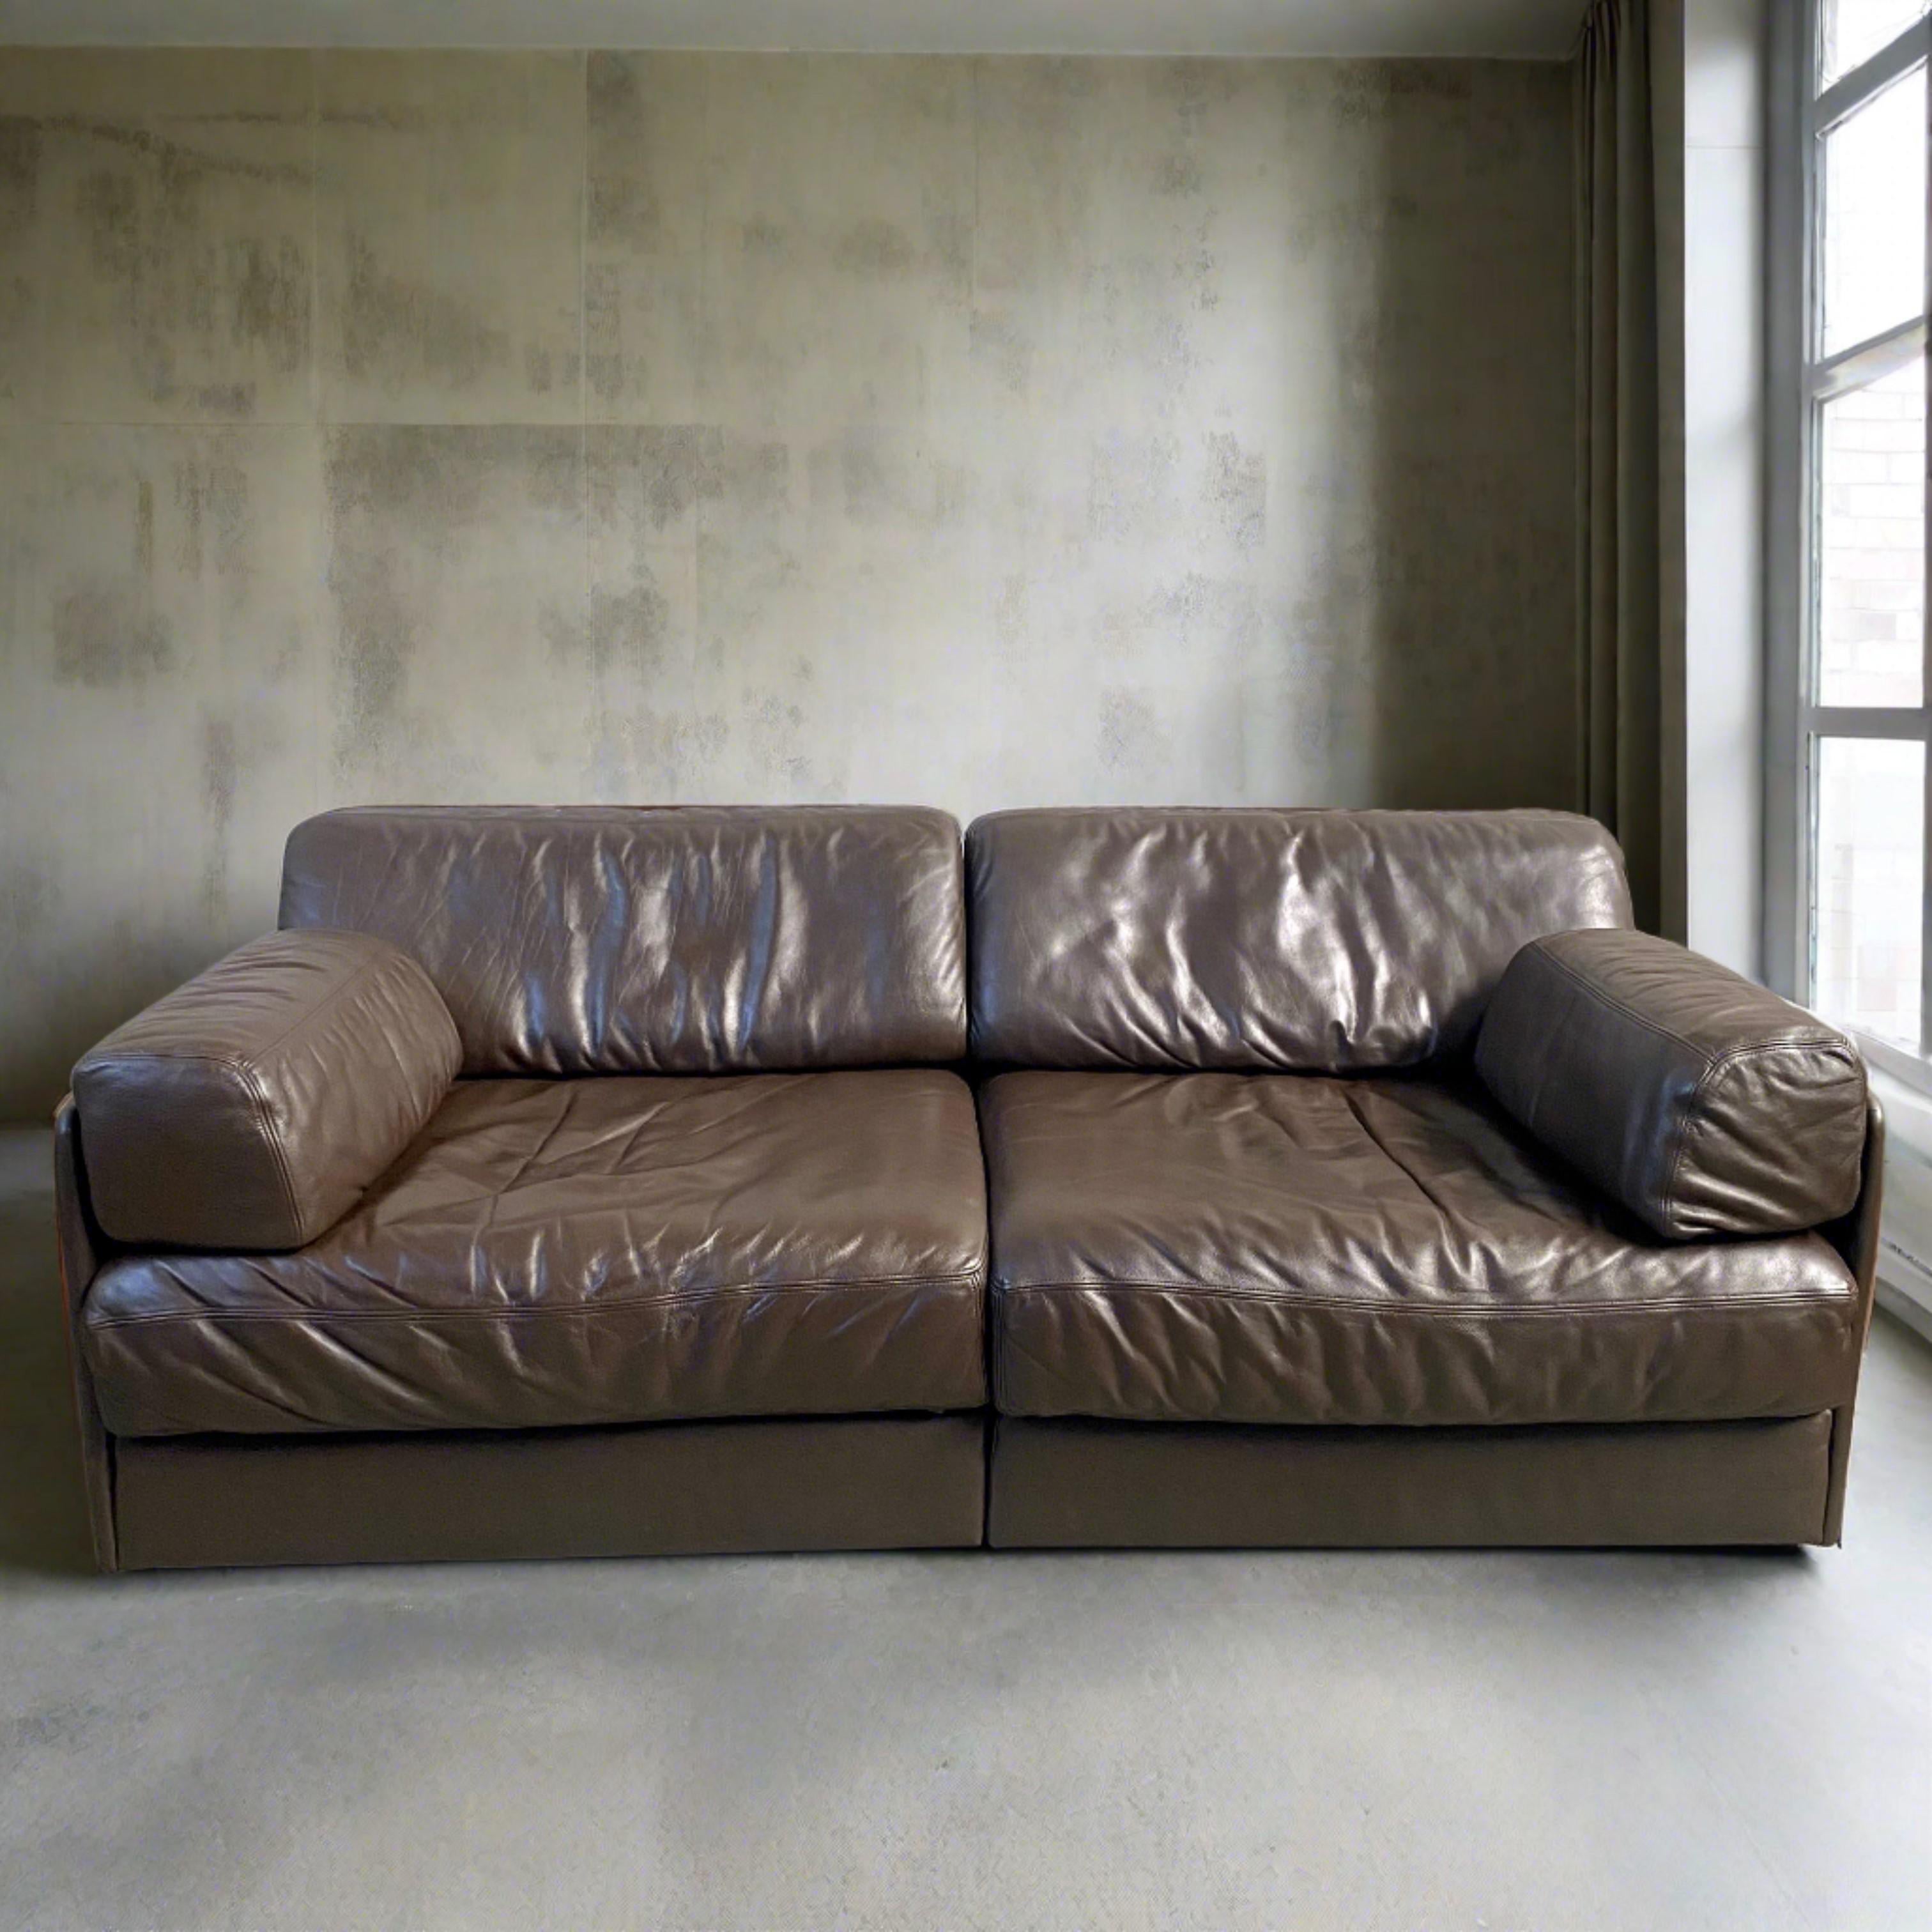 Das 2-Sitzer-Sofa DE SEDE DS76 ist eine Ikone des Mid-Century-Designs und ein wahres Meisterwerk. Dieses Sofa wurde 1972 von dem renommierten Designteam DE SEDE entworfen und verbindet mühelos Form und Funktion. Es strahlt nicht nur den klassischen